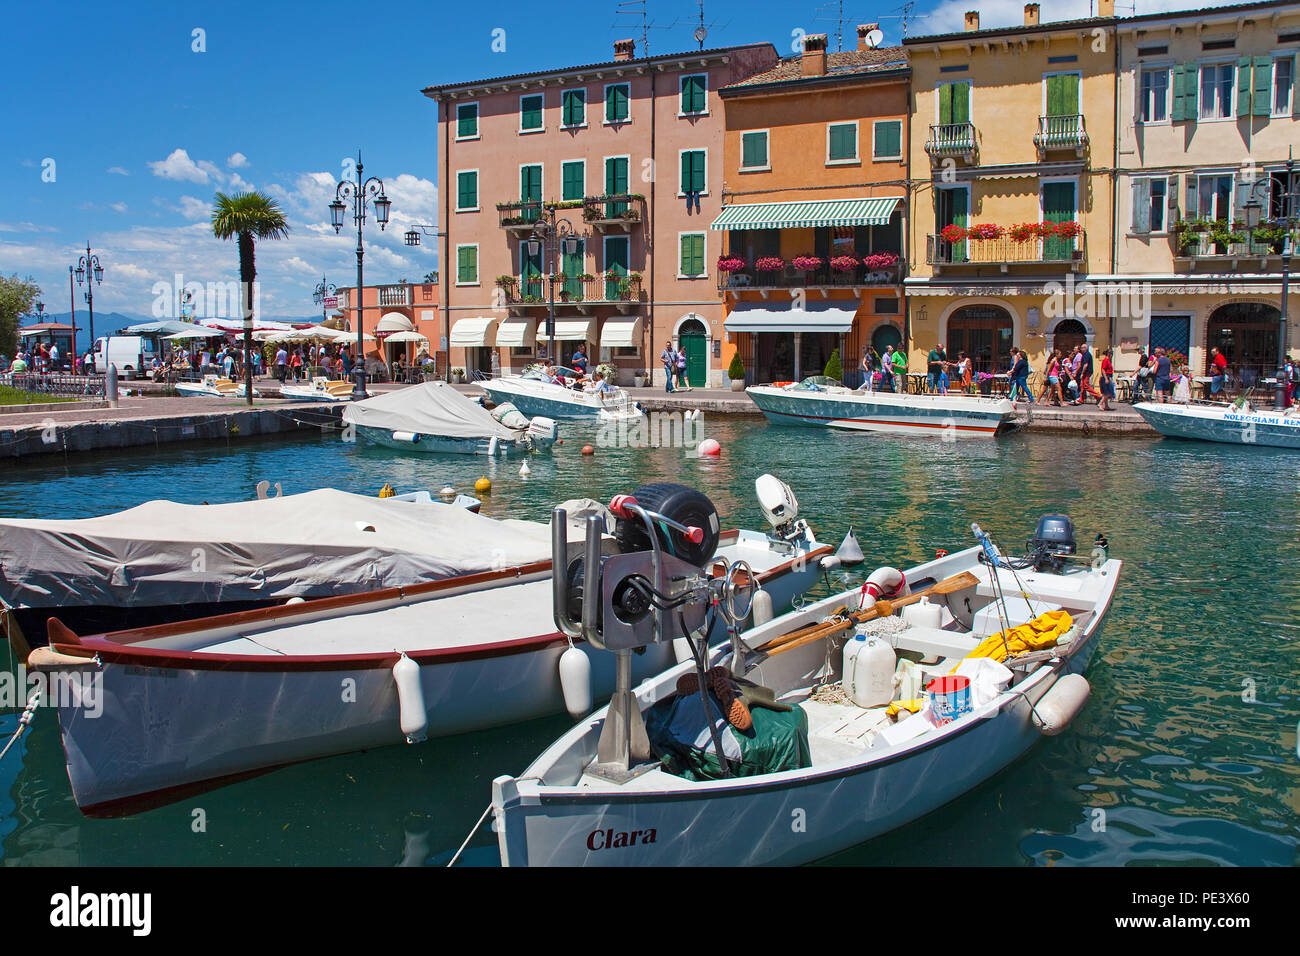 Fischerboote im Hafen von Lazise, gardasee, Provinz Verona, Italien | Fisching imbarcazioni presso il porto di Lazise, sul lago di Garda, provincia di Verona, Italia Foto Stock